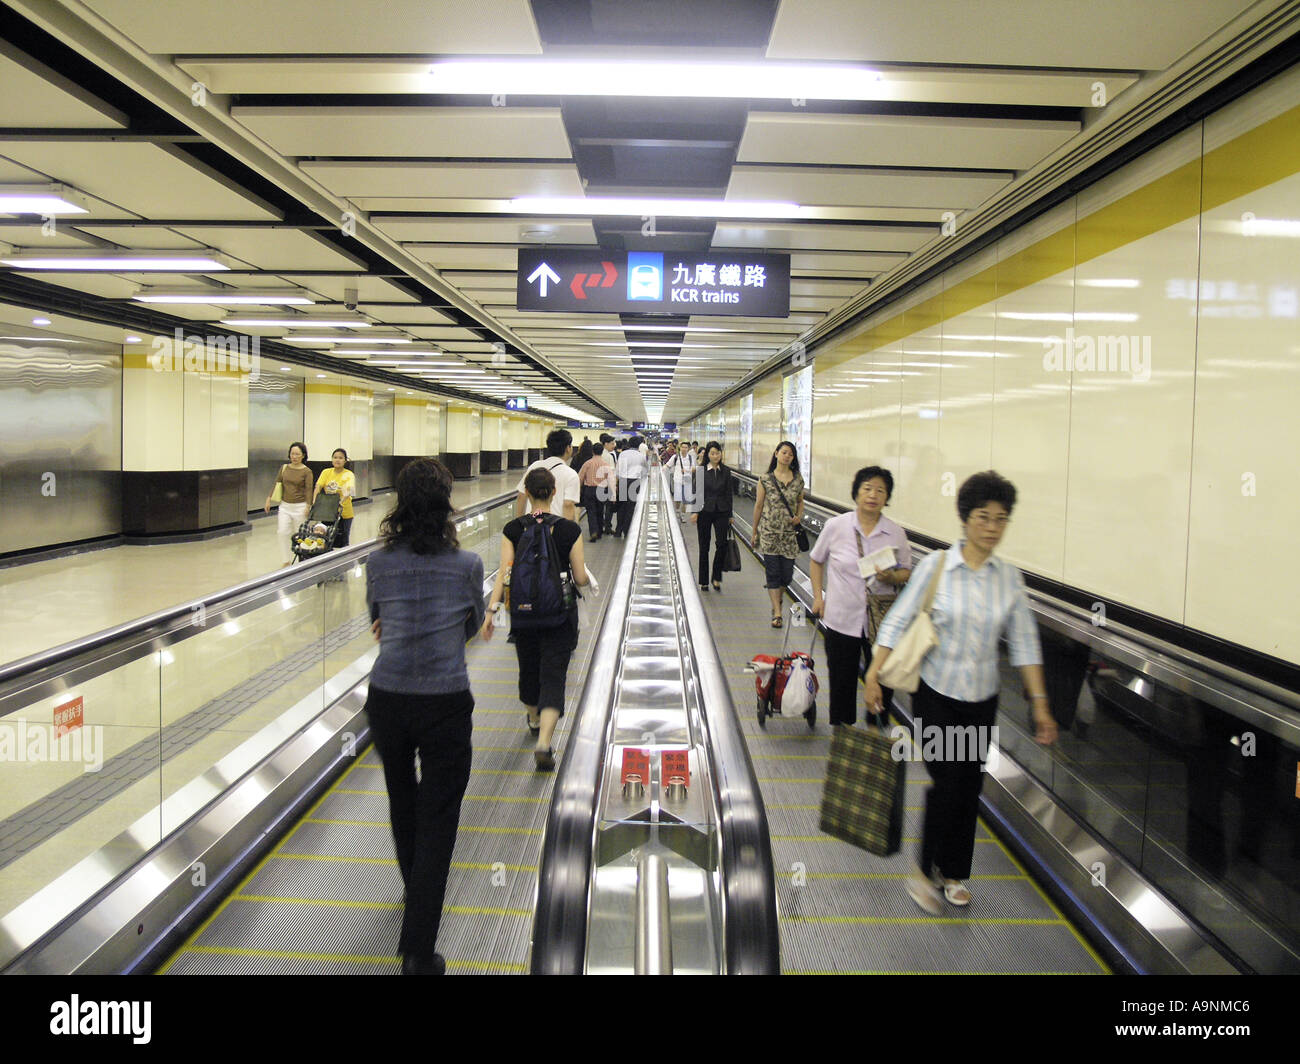 Examen à mi-parcours Mass Transit Railway Transport Logistic China Hong Kong Billet d'Asie Asie chinoise au transport urbain ville commut Banque D'Images